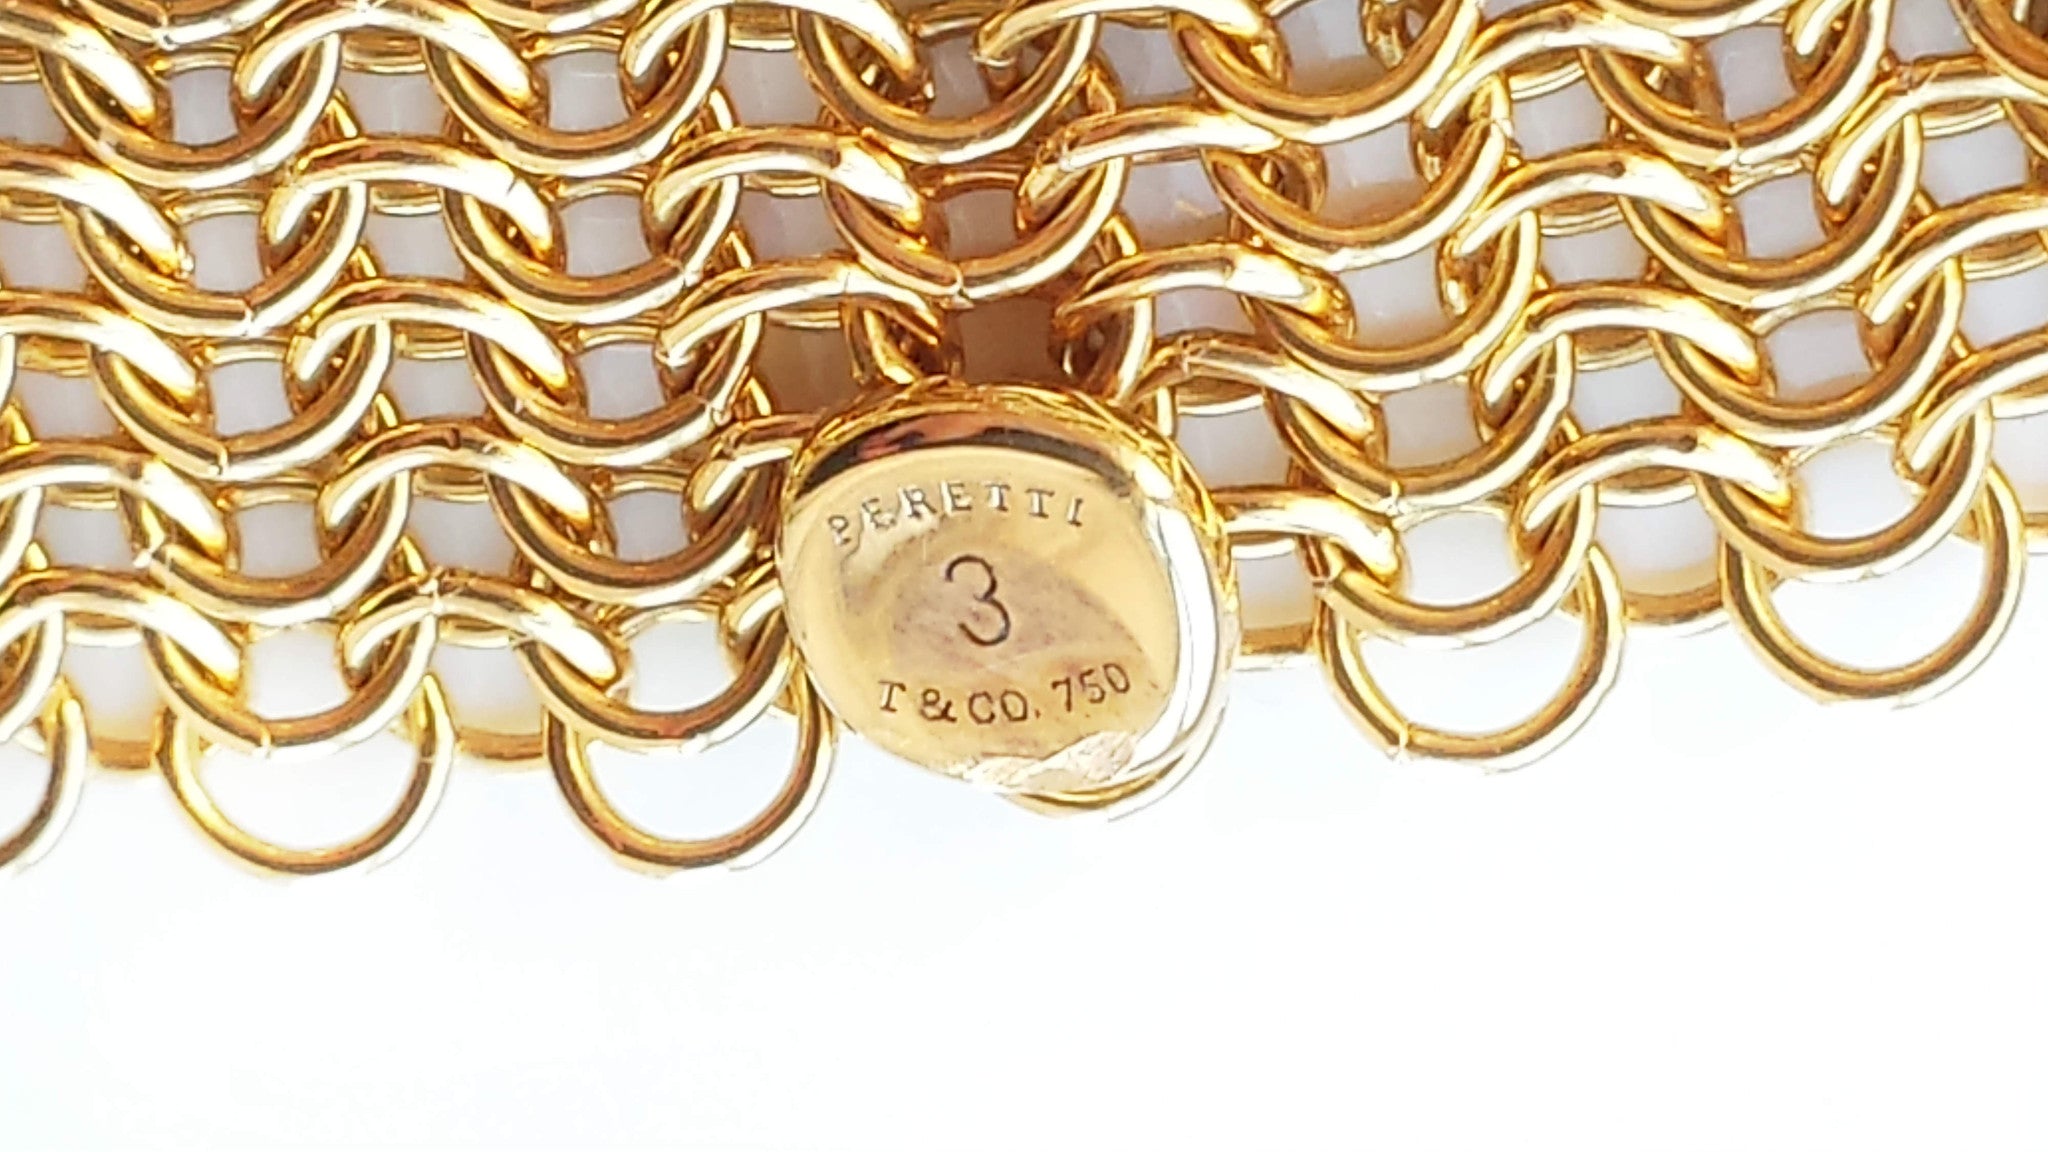 tiffany gold mesh bracelet